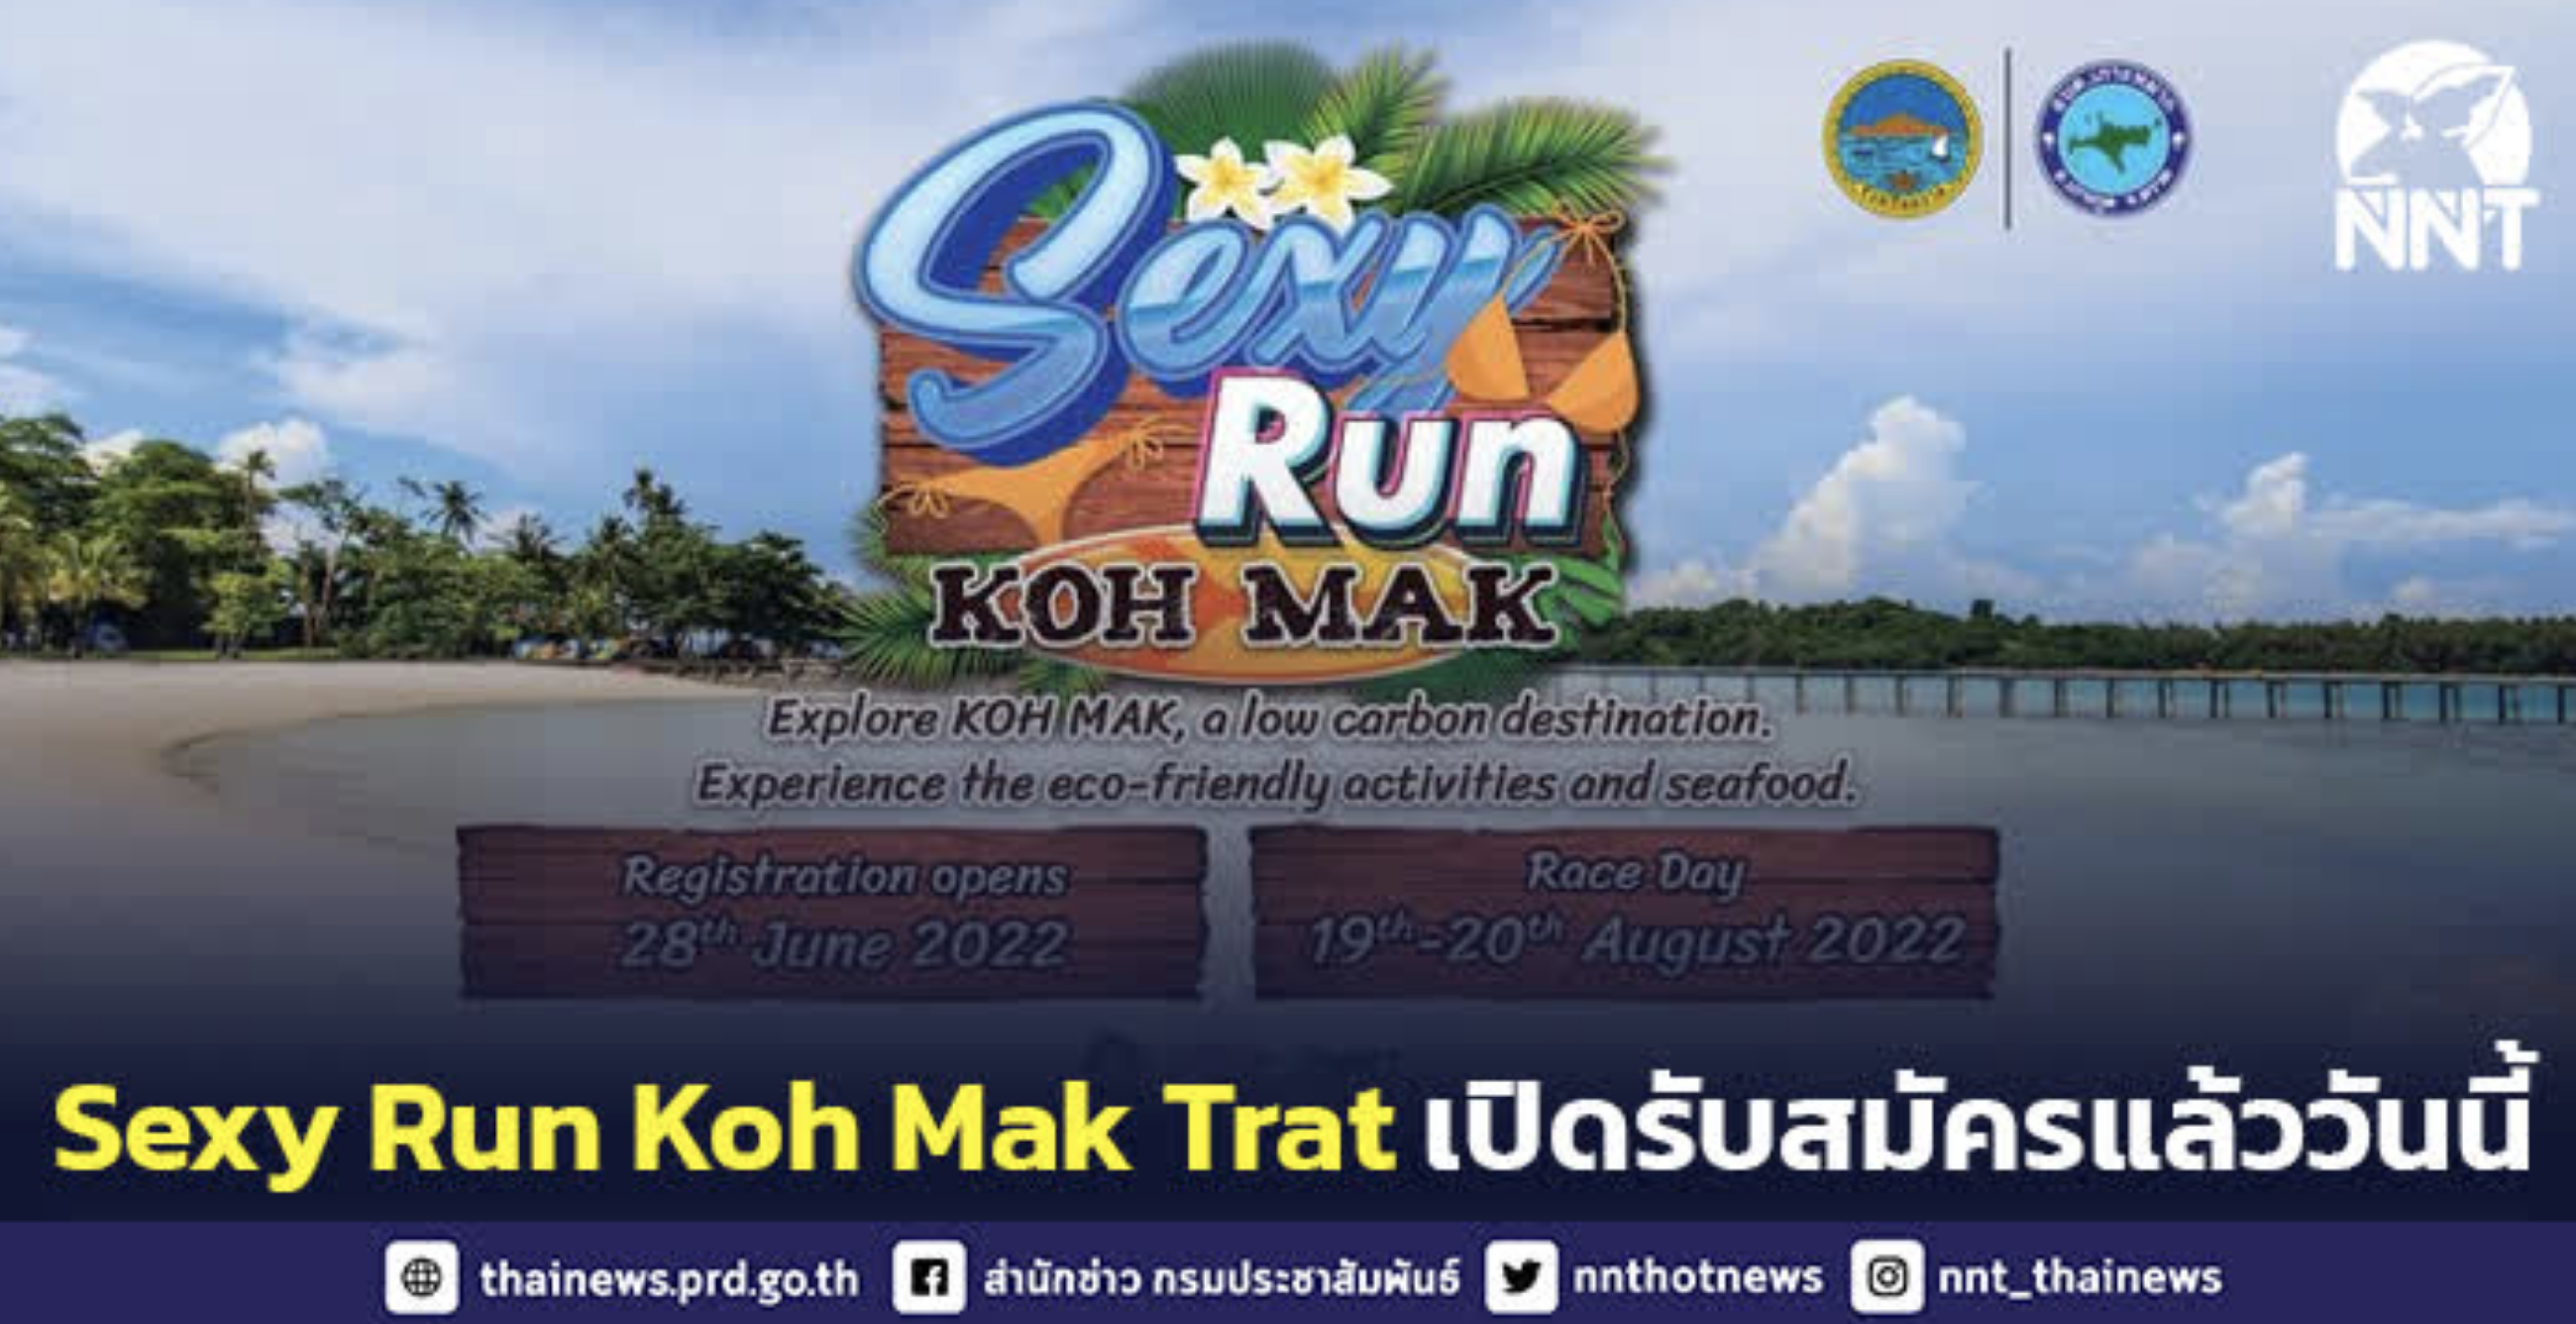 ททท. จัดกิจกรรมวิ่ง Sexy Run Koh Mak กระตุ้นการเดินทางท่องเที่ยวภูมิภาค สร้างรายได้สู่ชุมชน